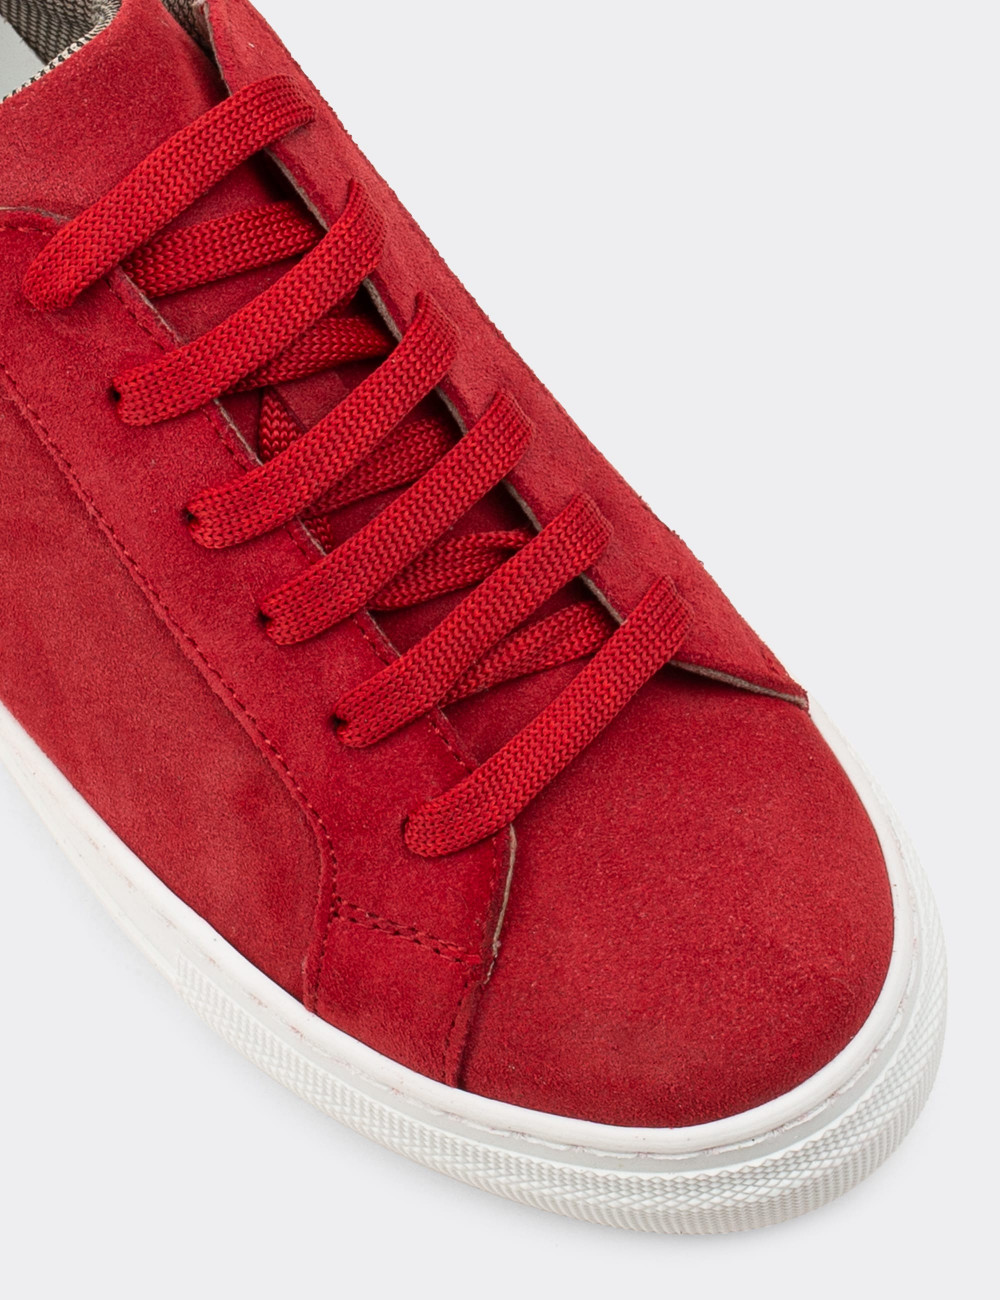 Hakiki Süet Kırmızı Sneaker Kadın Ayakkabı - Z1681ZKRMC01